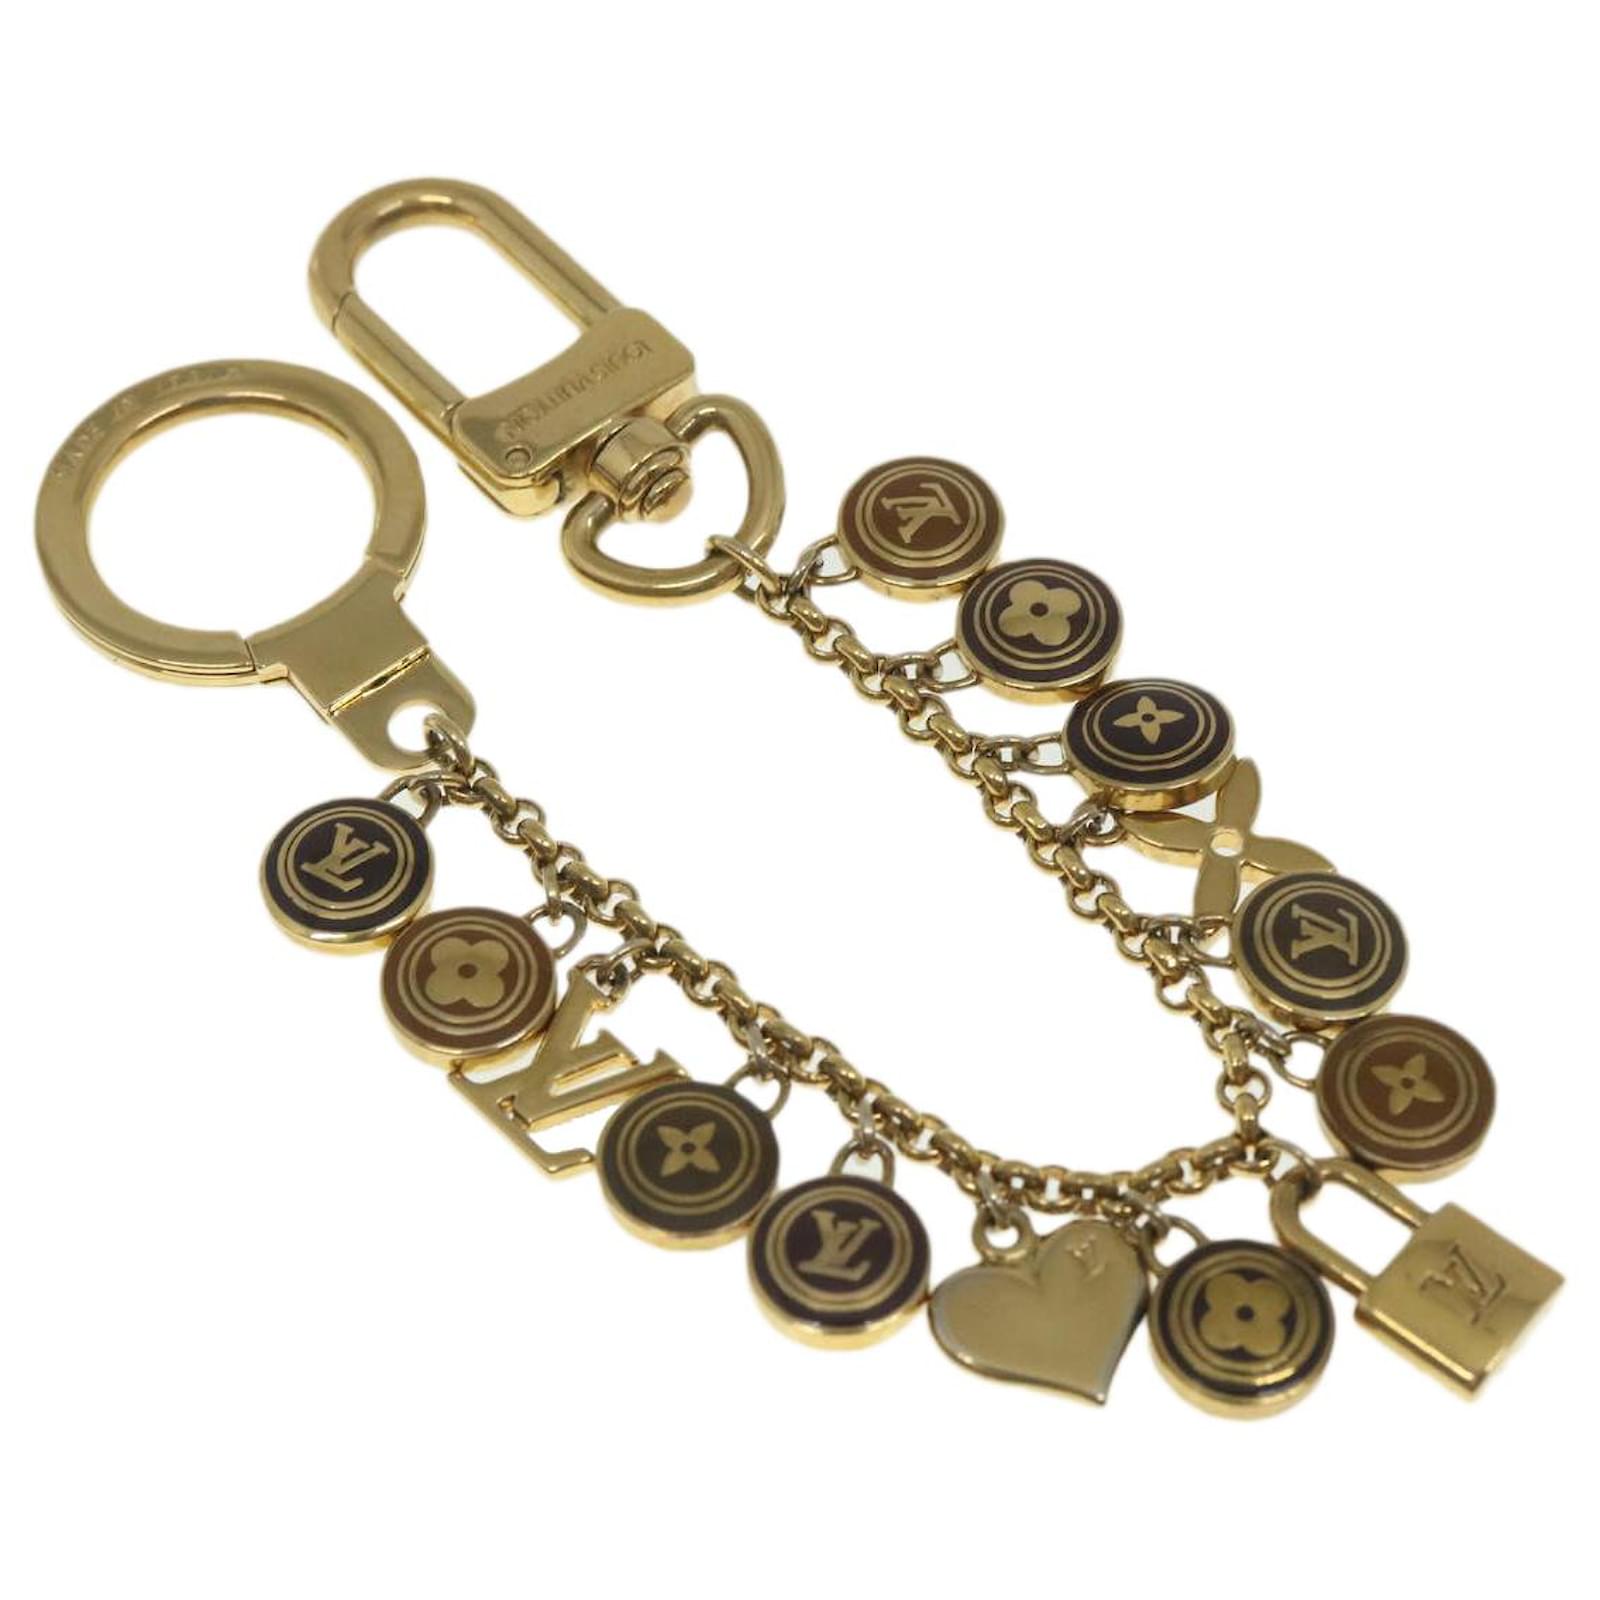 Louis Vuitton Pastilles Cles Key Chain Bag Charm